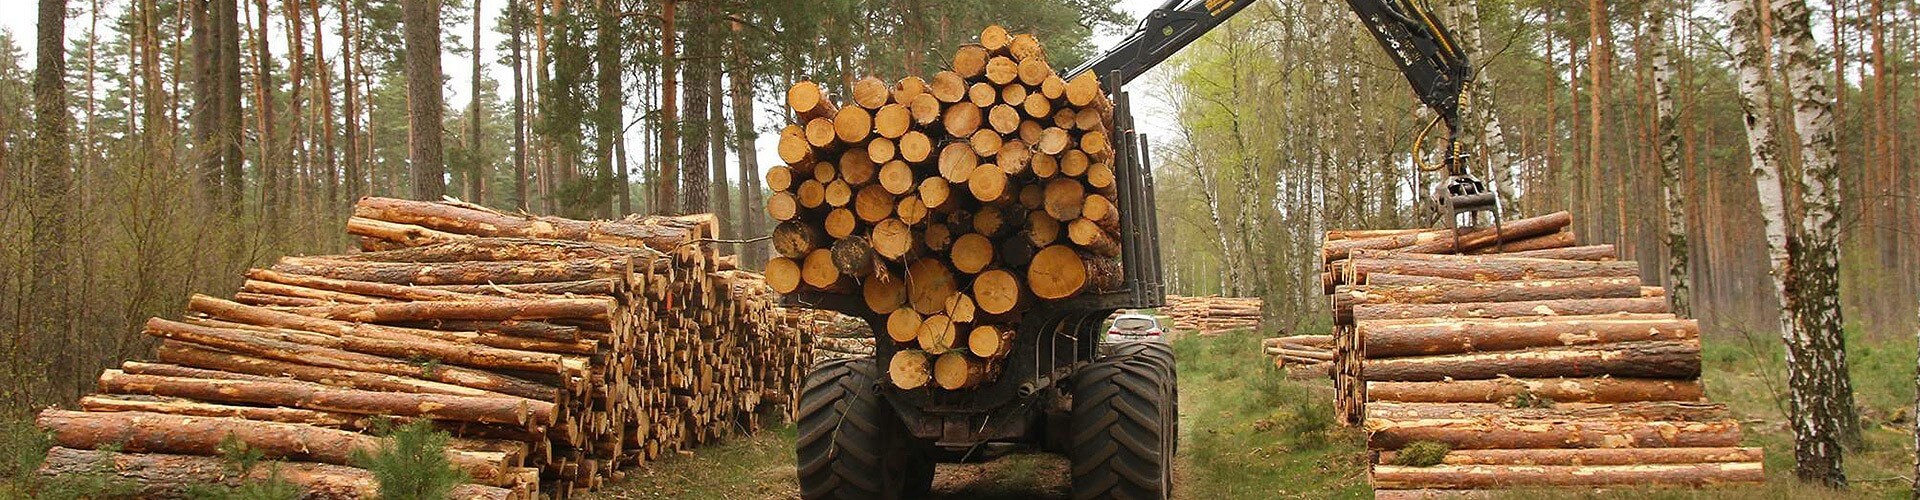 Baumpflege, Baumfällung und Sicherheitskontrollen